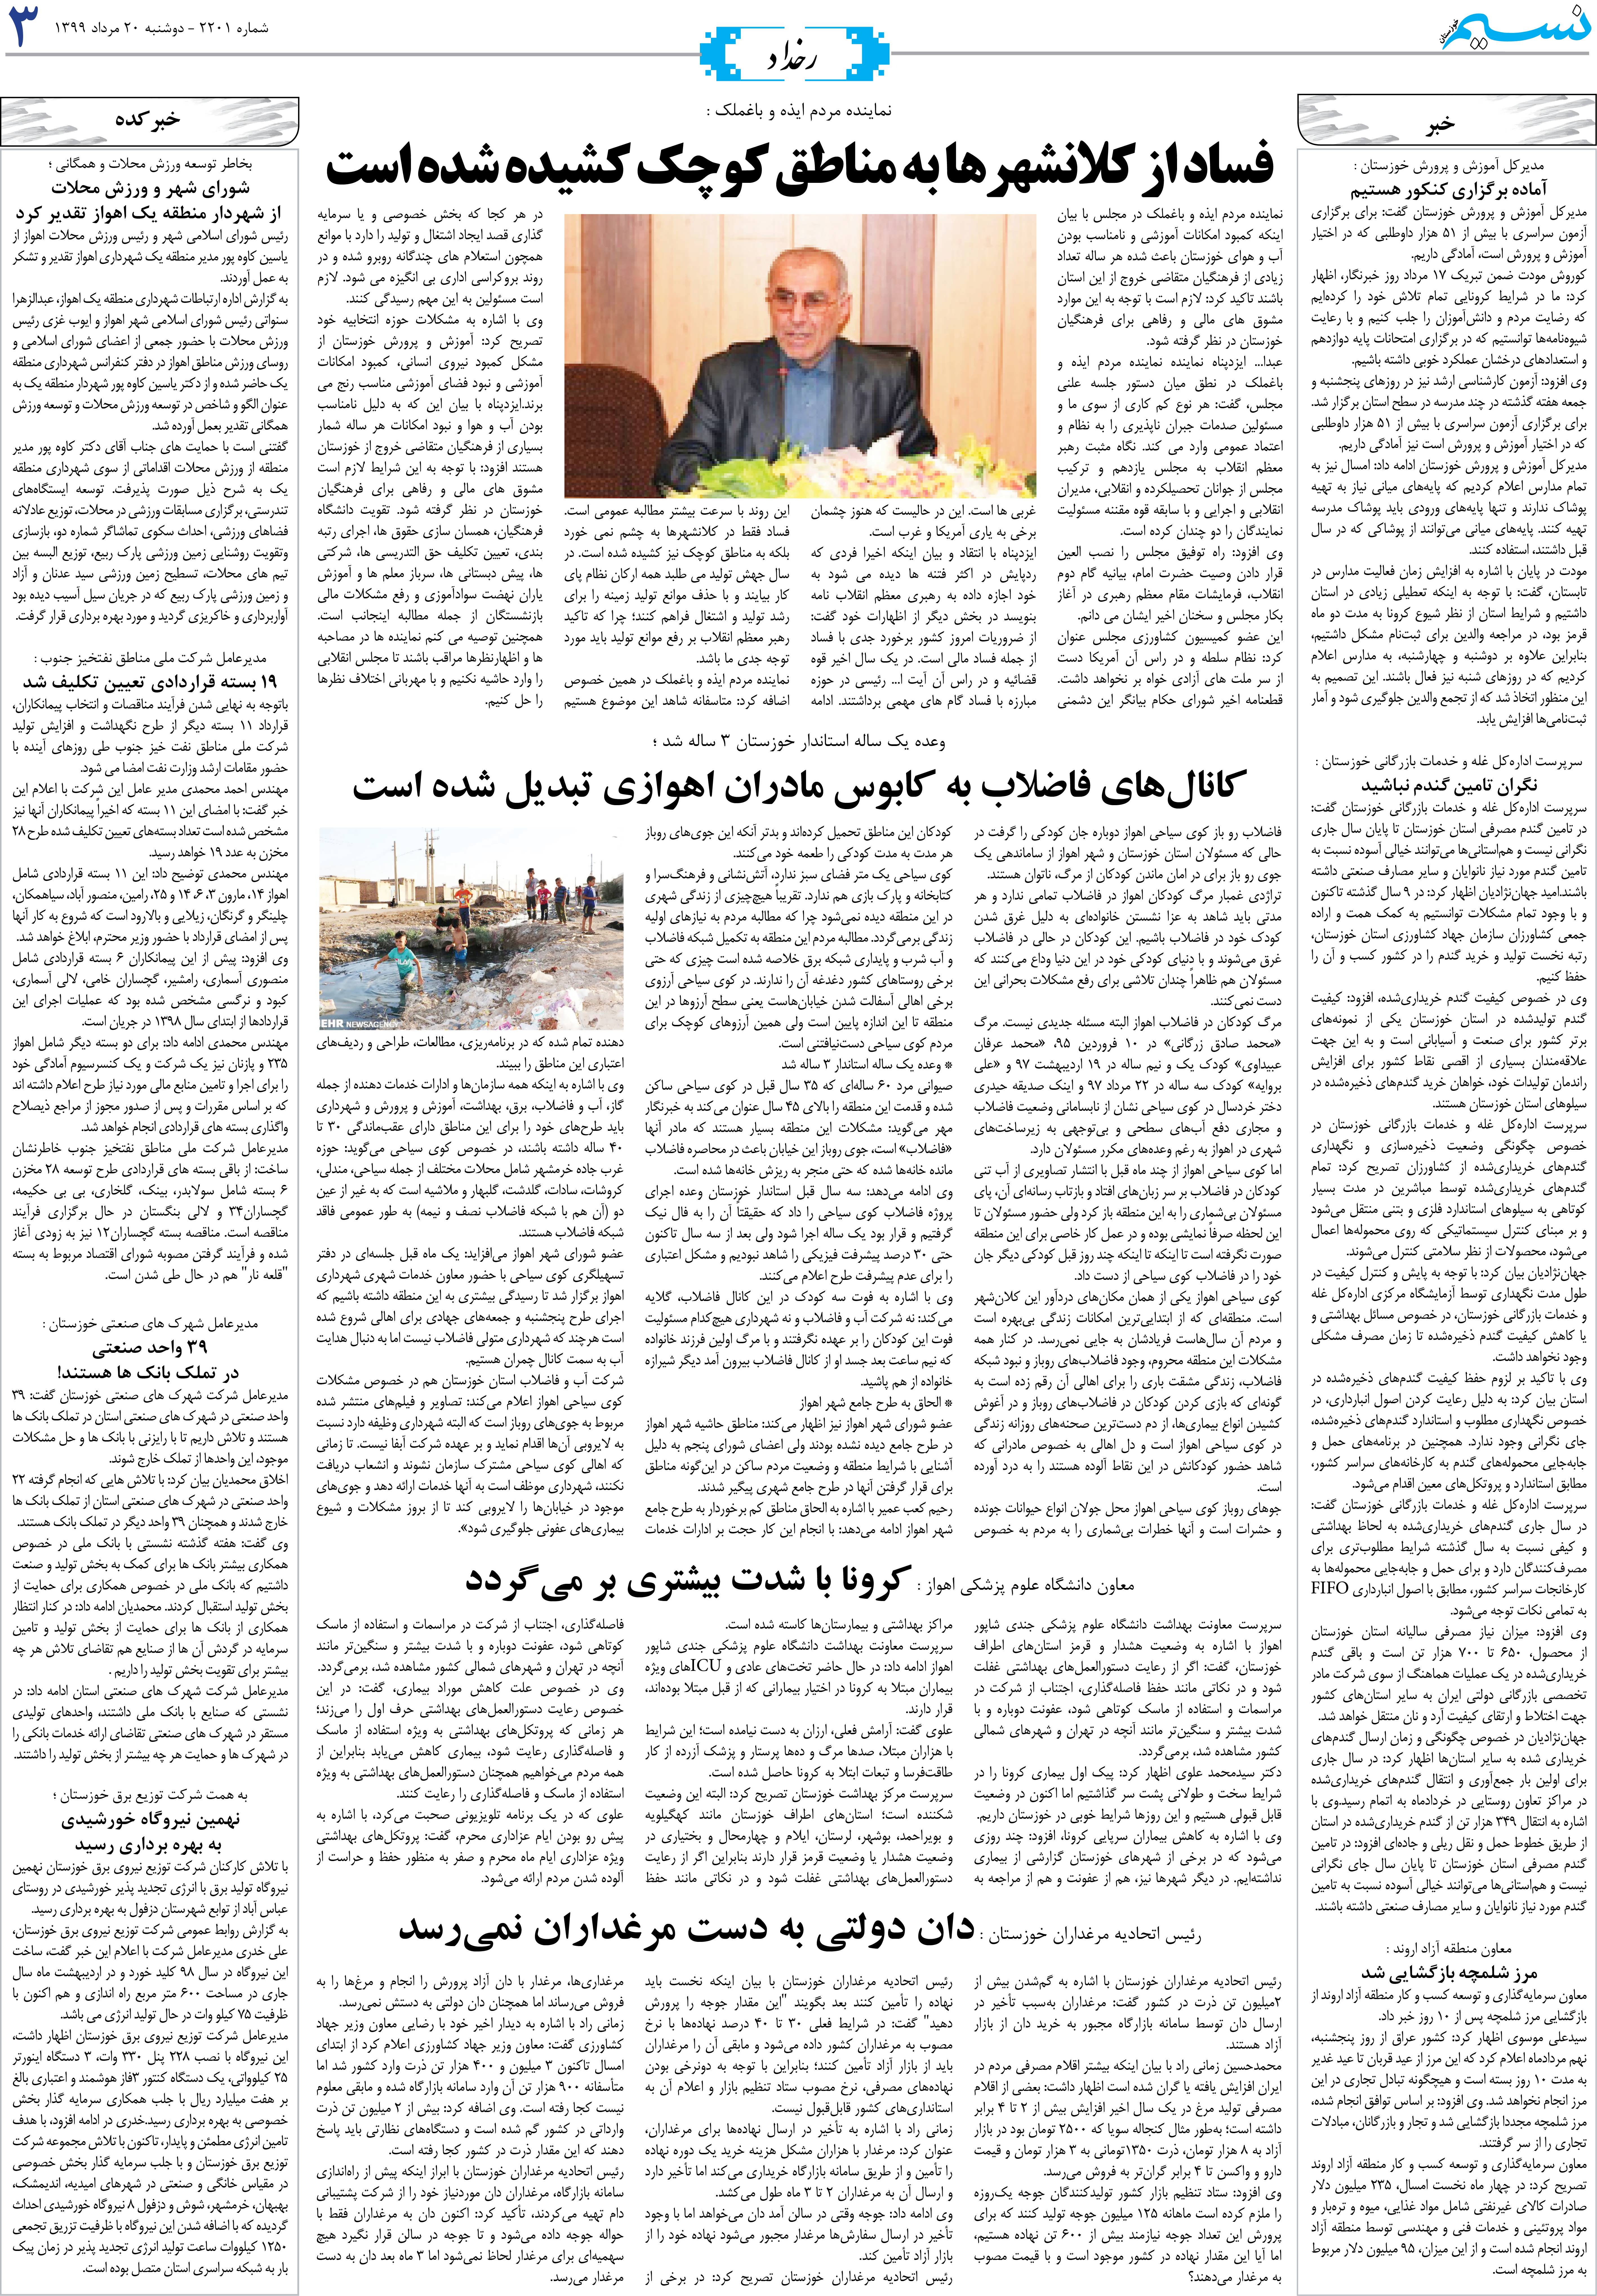 صفحه رخداد روزنامه نسیم شماره 2201